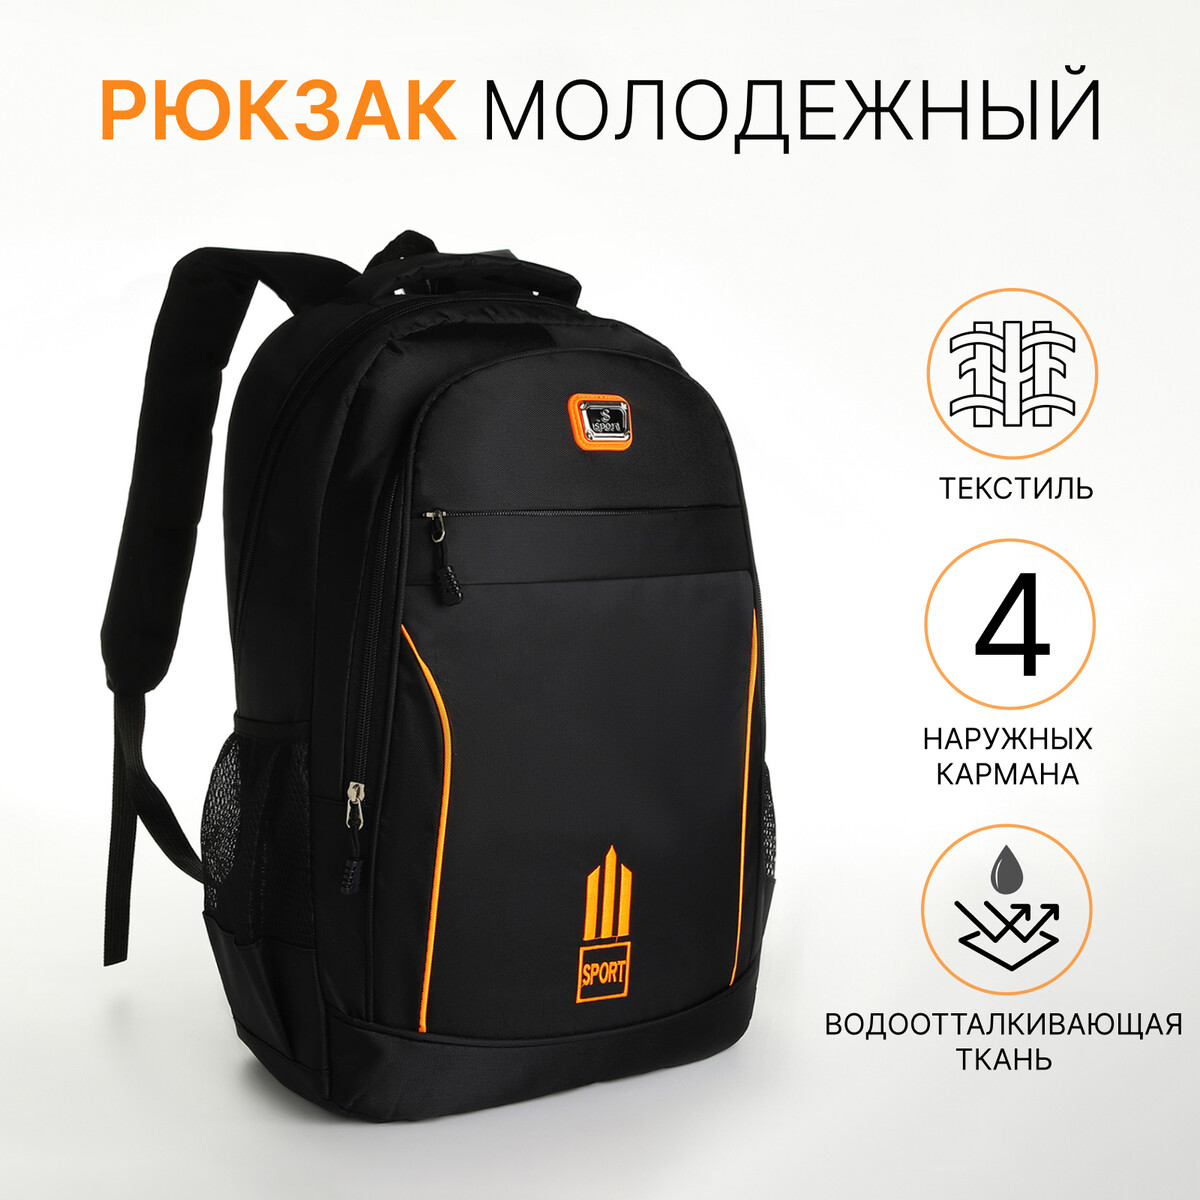 Рюкзак молодежный из текстиля на молнии, 4 кармана, цвет черный/оранжевый рюкзак молодежный из текстиля 2 отдела на молнии 3 кармана оранжевый